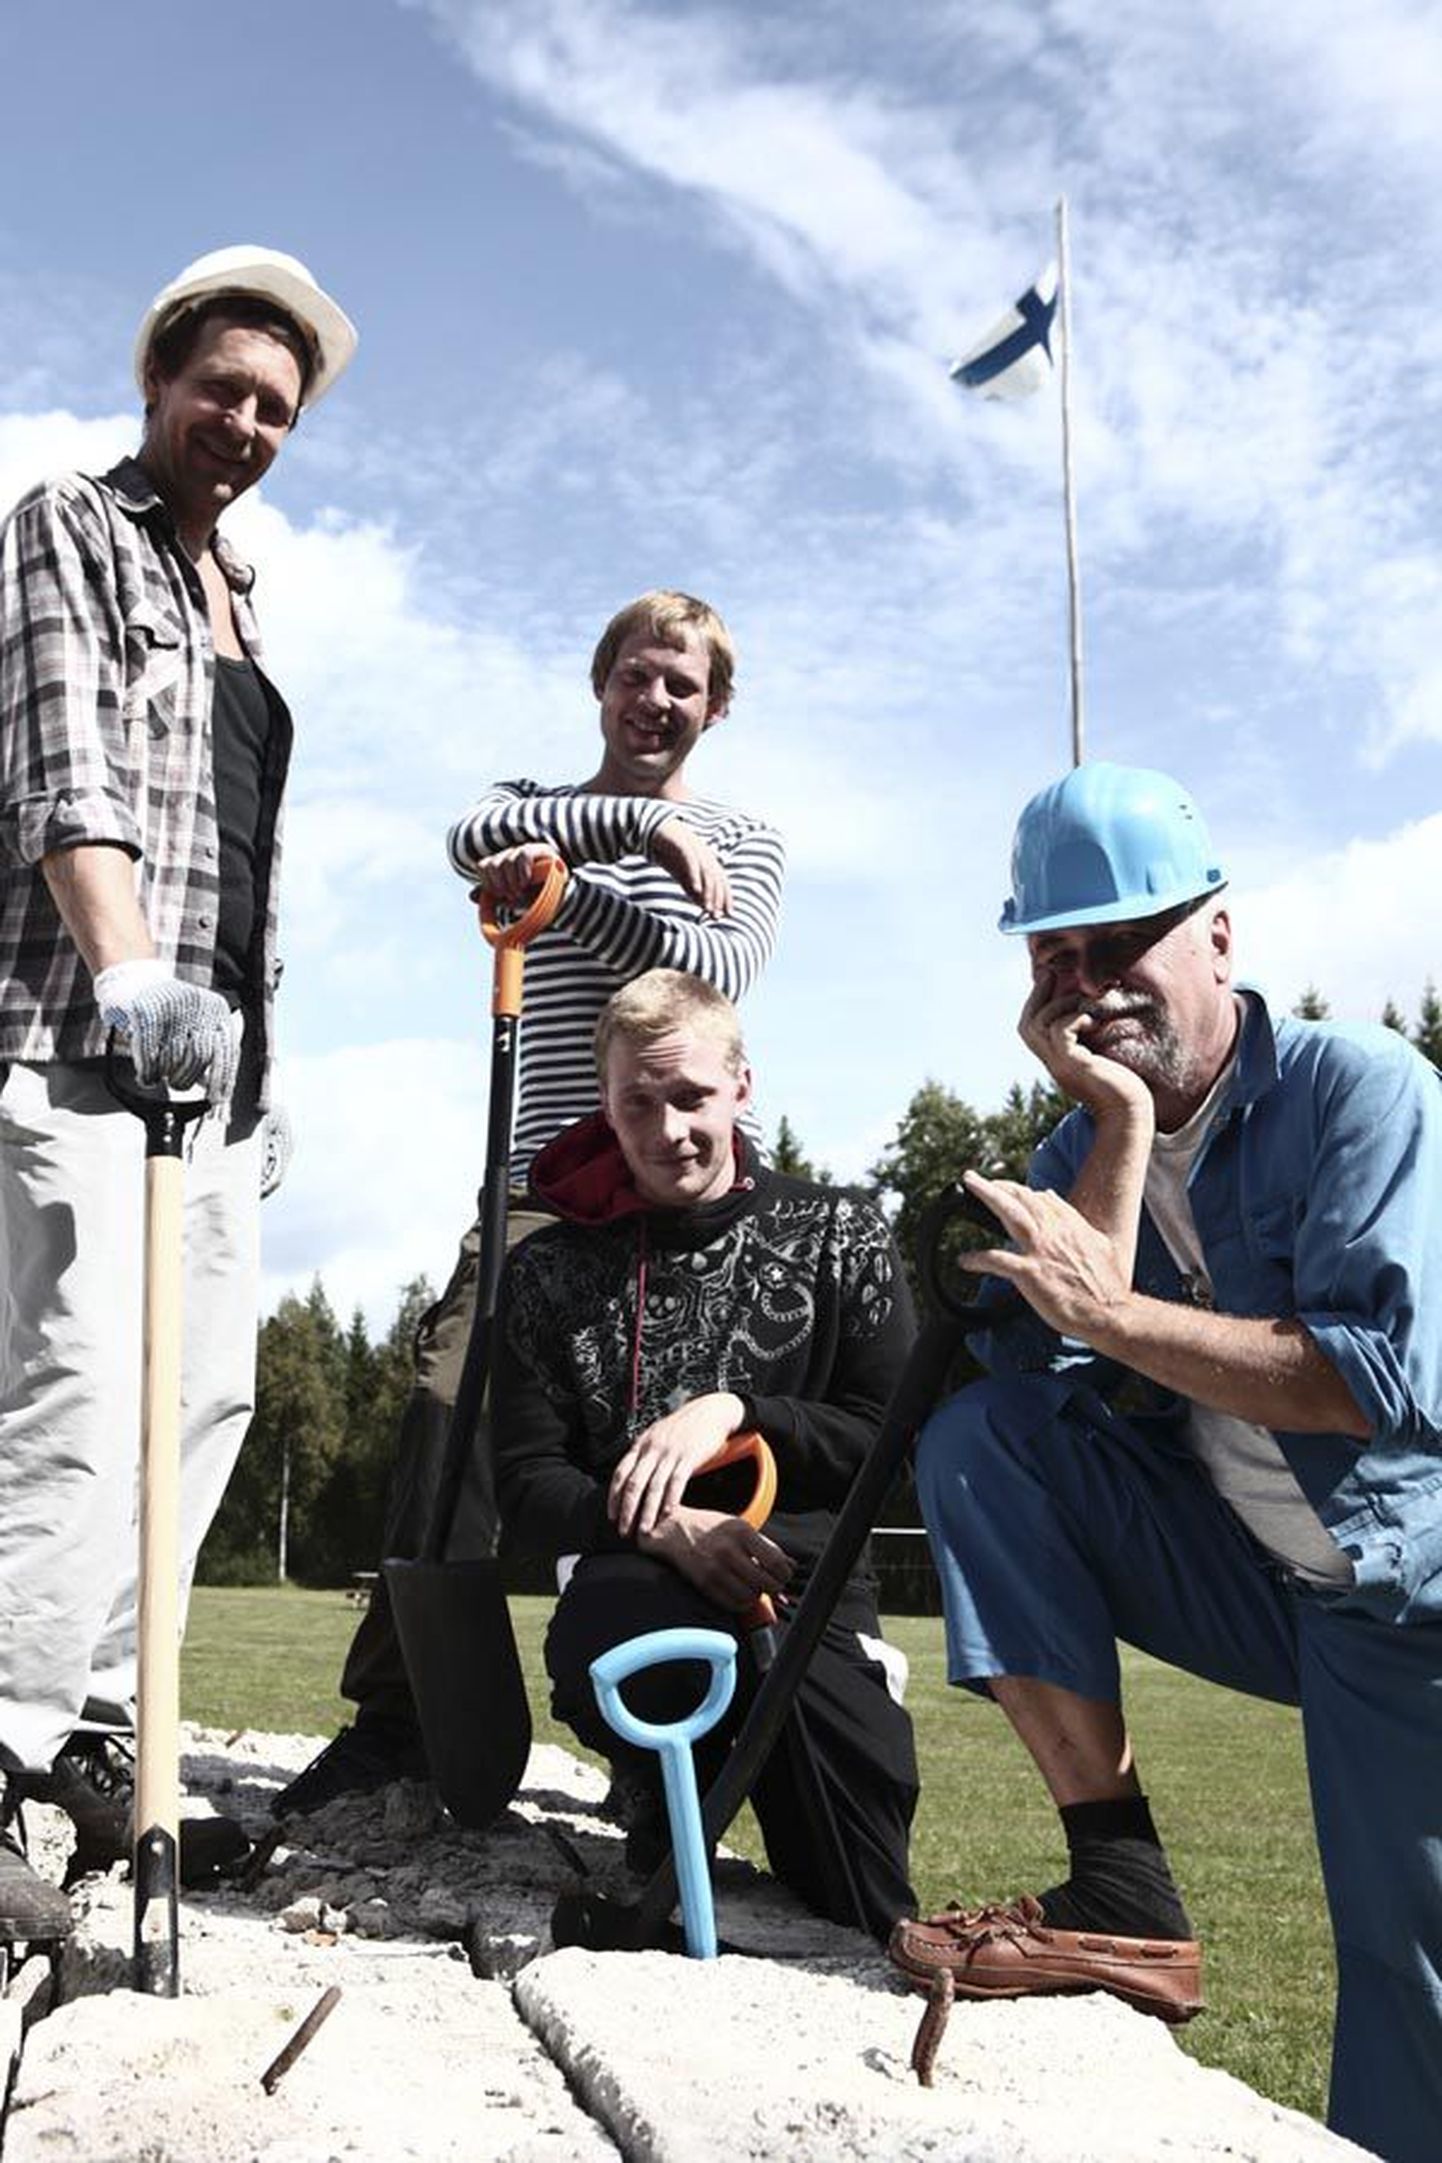 Seriaali «Kalevipojad» keskmes on neli eesti meest, kes proovivad end Soomes ehitajatena ära elatada. Neid kehastavad (vasakult) Ivo Uukkivi, Andres Mähar, Pääru Oja ja Vello Janson.